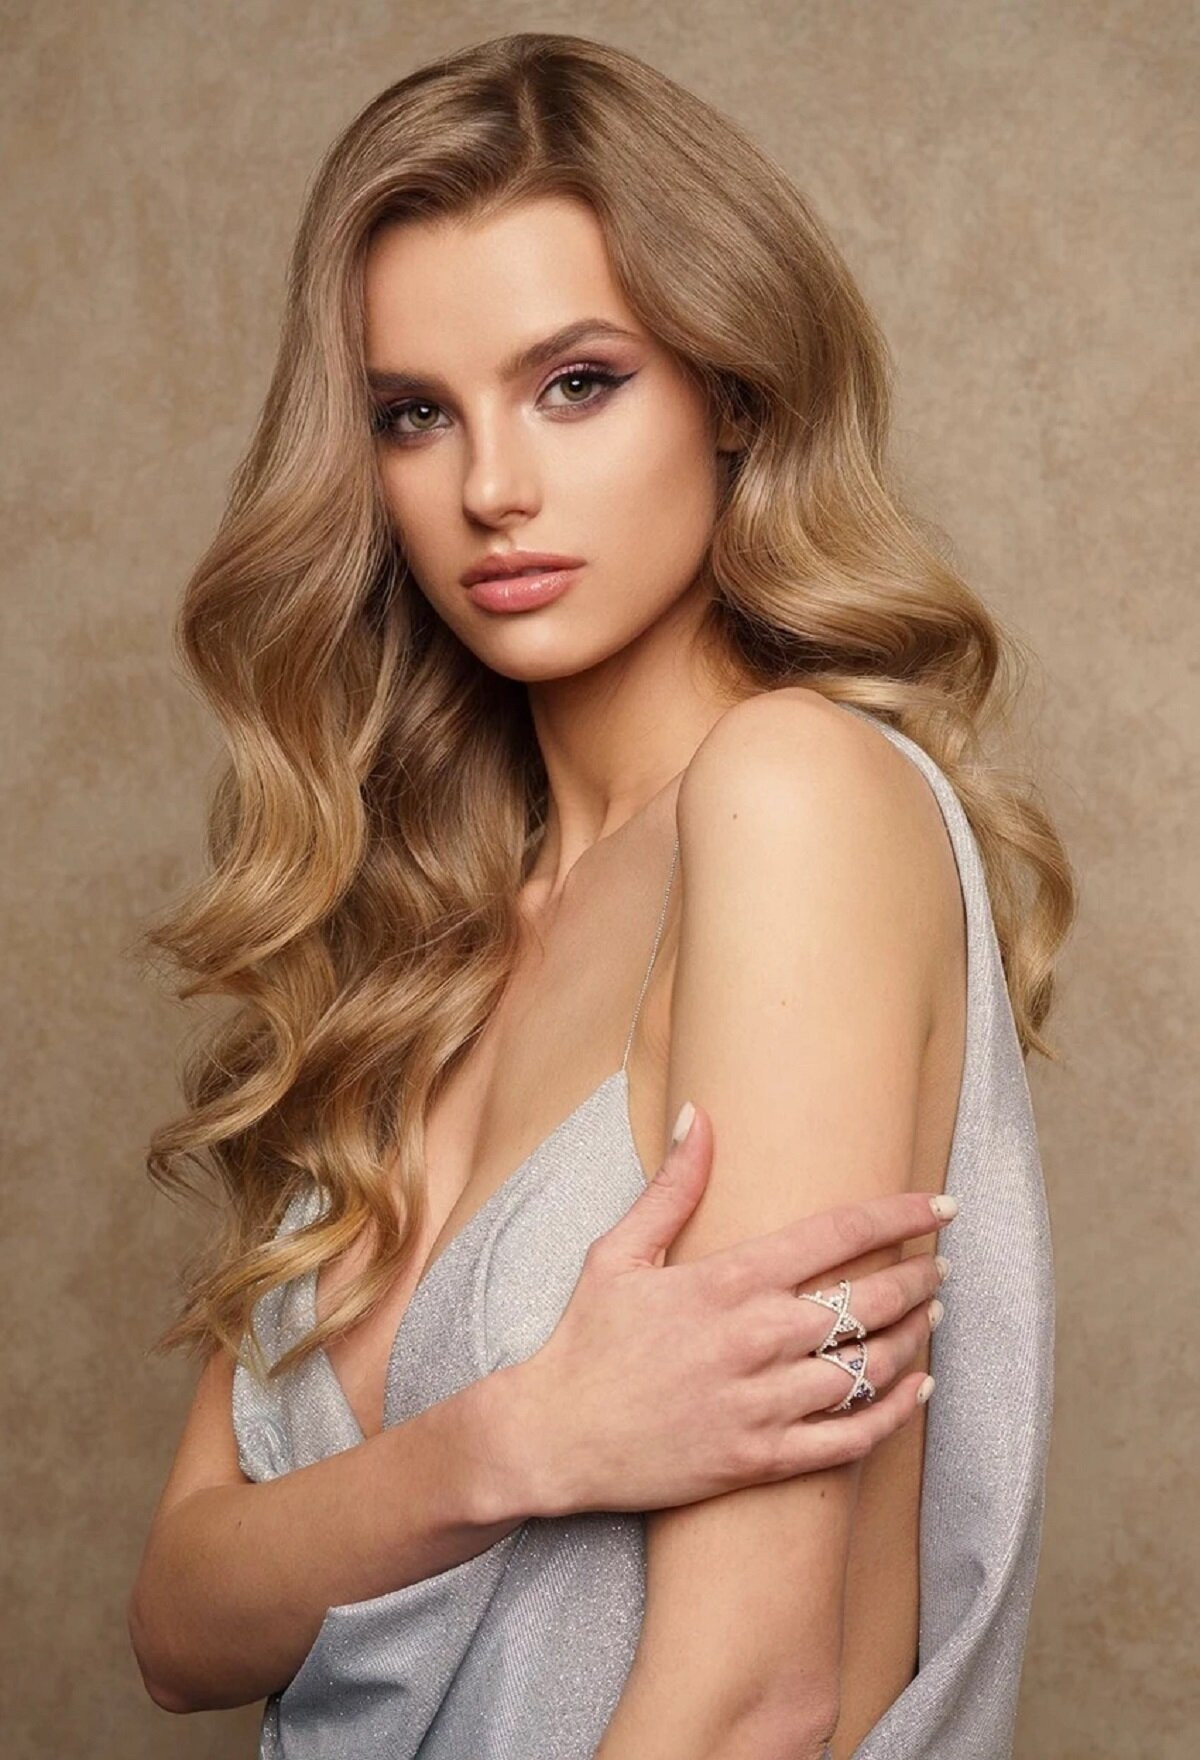 Krystyna Pyszko đang là người mẫu quốc tế, đại diện cho nhiều thương hiệu đình đám. Cô thành thạo 4 thứ tiếng là tiếng Anh, tiếng Ba Lan, tiếng Slovak và tiếng Đức.